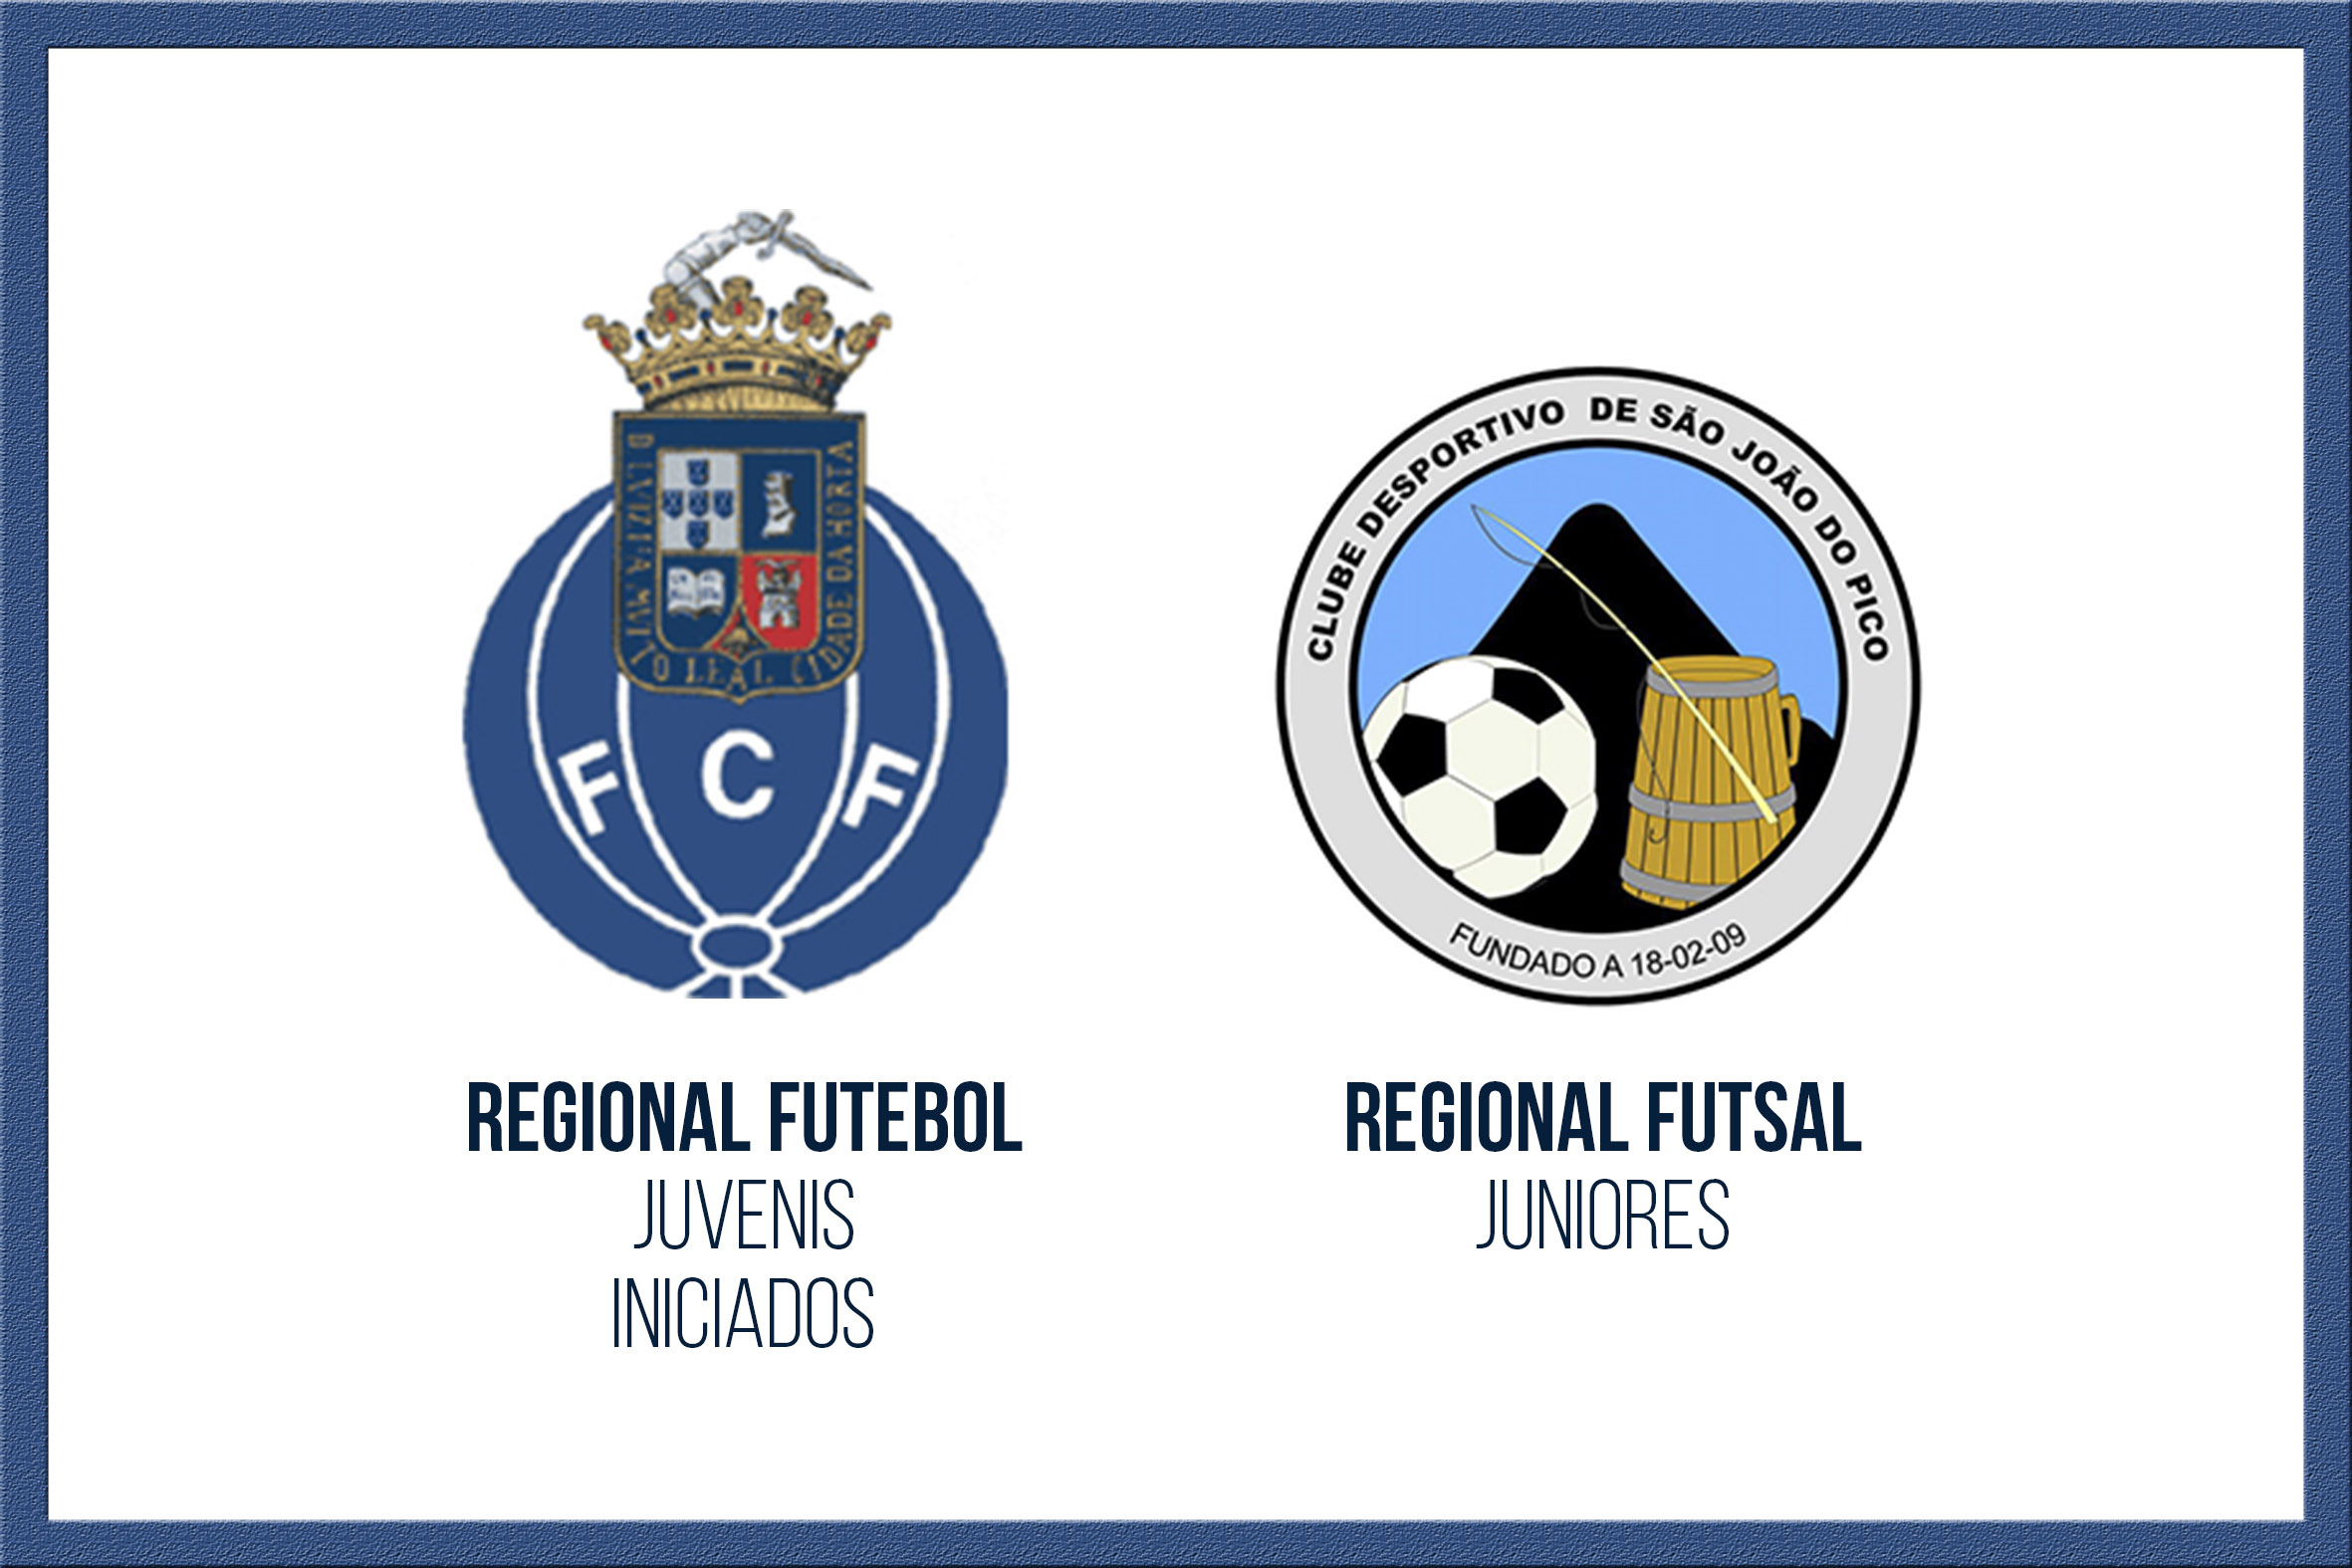 FC Flamengos em Futebol (Juvenis e Iniciados) e CD São João em Futsal (Juniores) iniciam Campeonato Regional